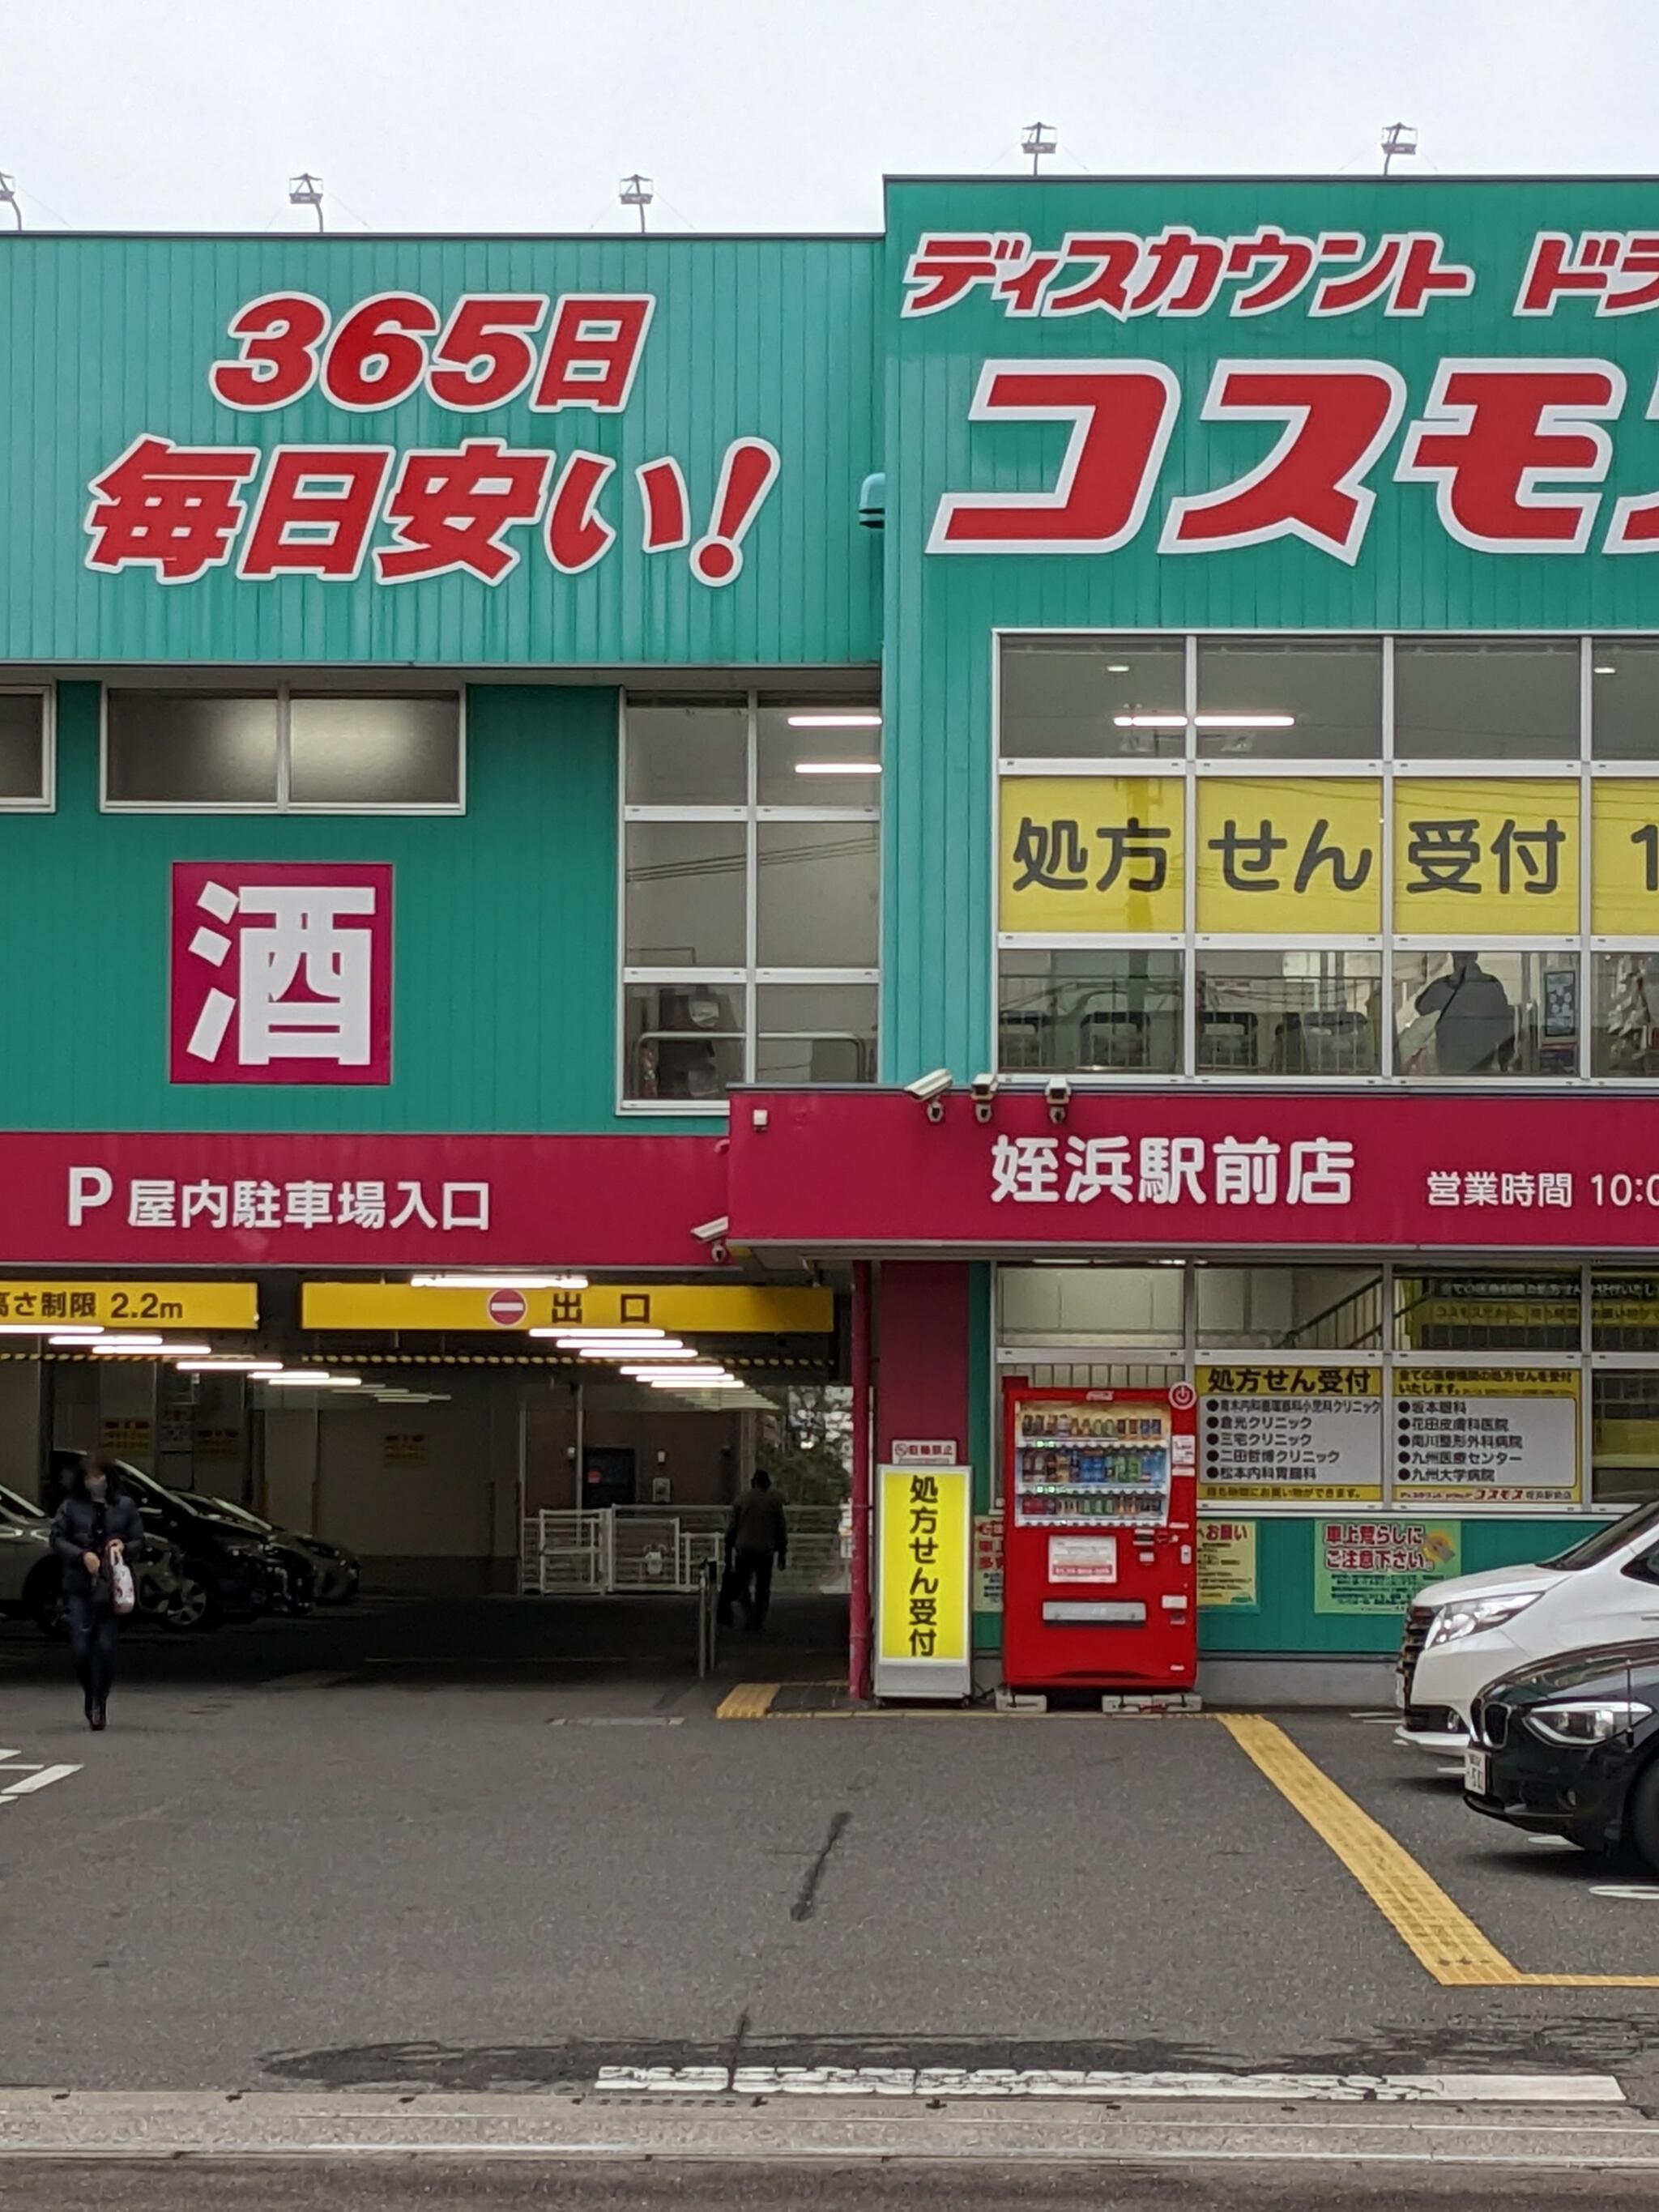 ディスカウントドラッグコスモス 姪浜駅前店の代表写真2